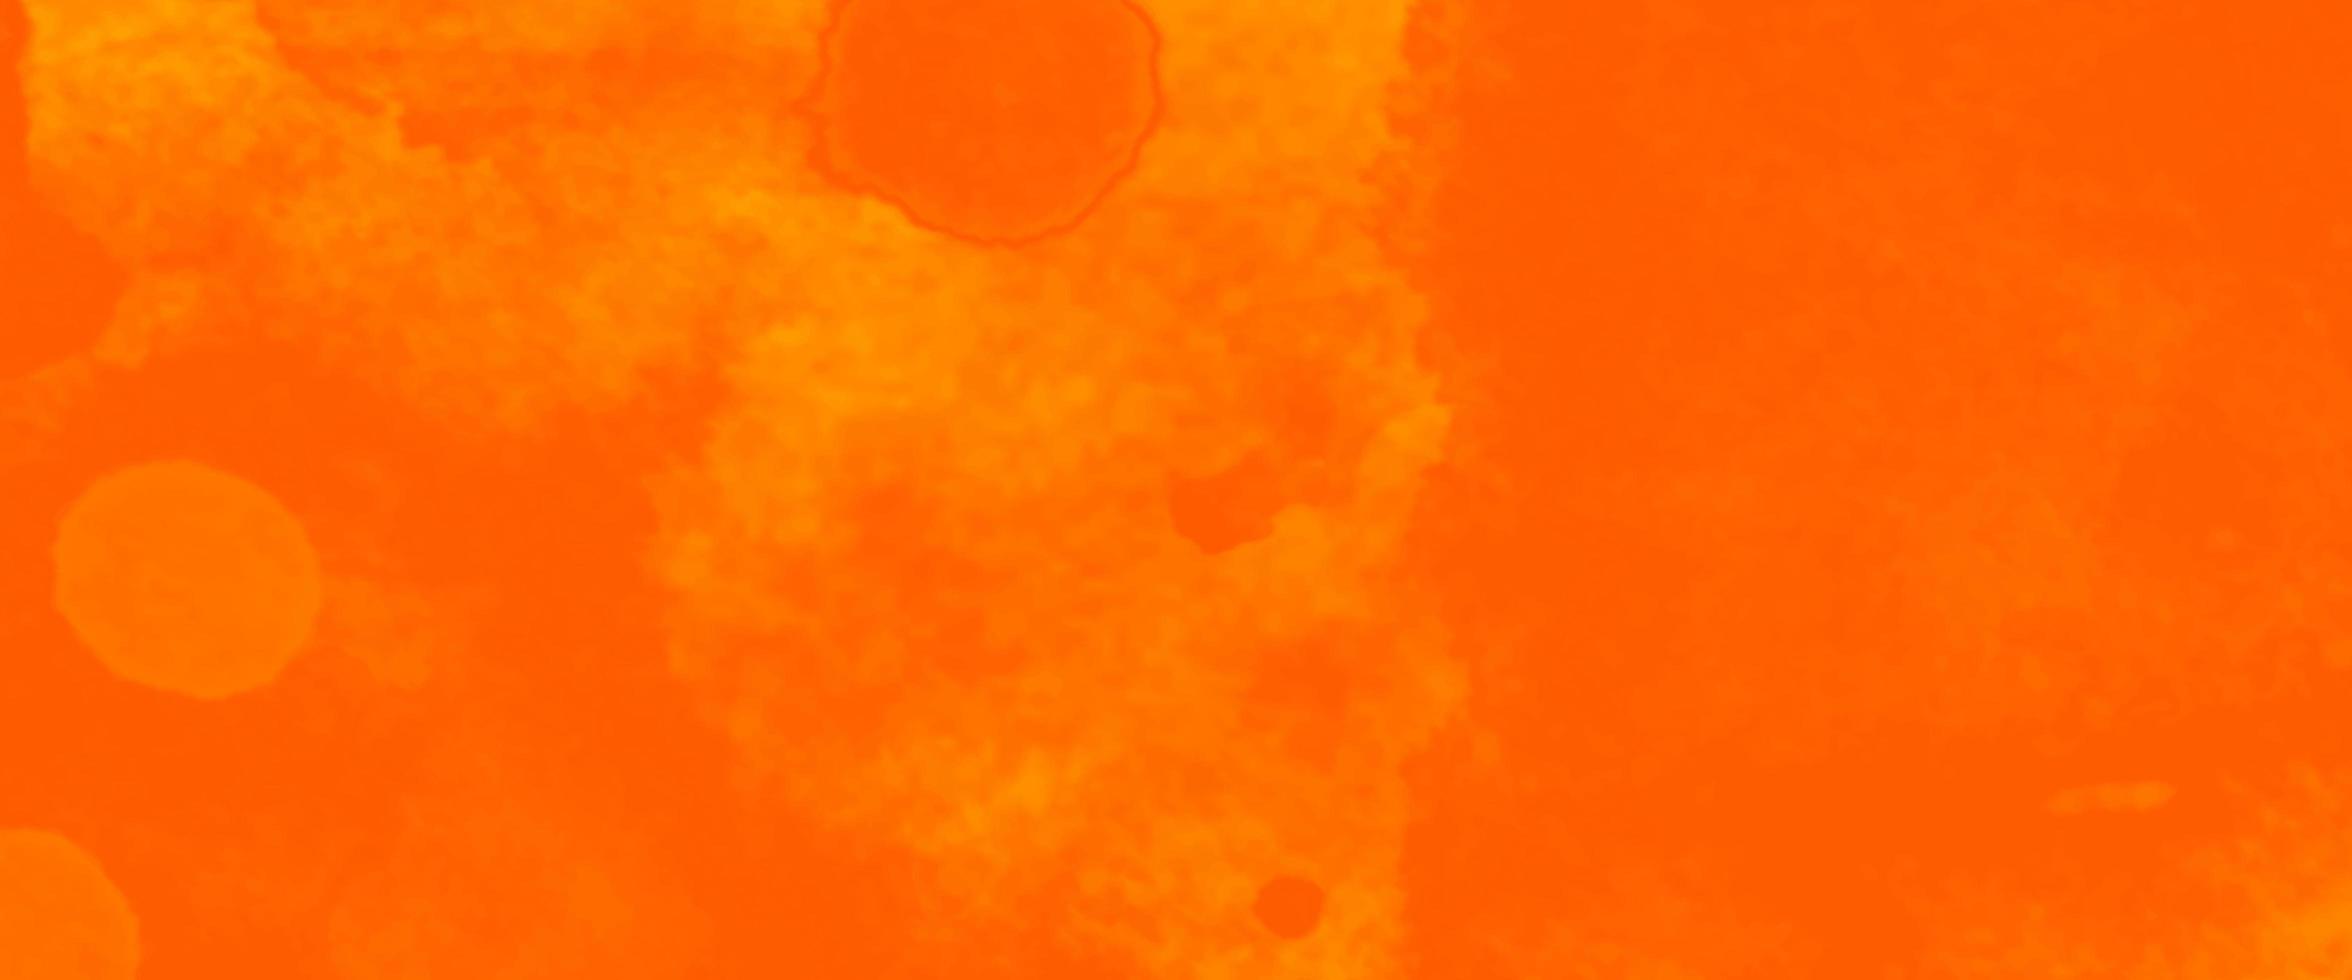 pintura roja y amarilla, fondo pintado de color naranja acuarela. colorido diseño de fondo grunge acuarela. papel texturizado colorido en otoño brillante o colores cálidos de puesta de sol de otoño foto